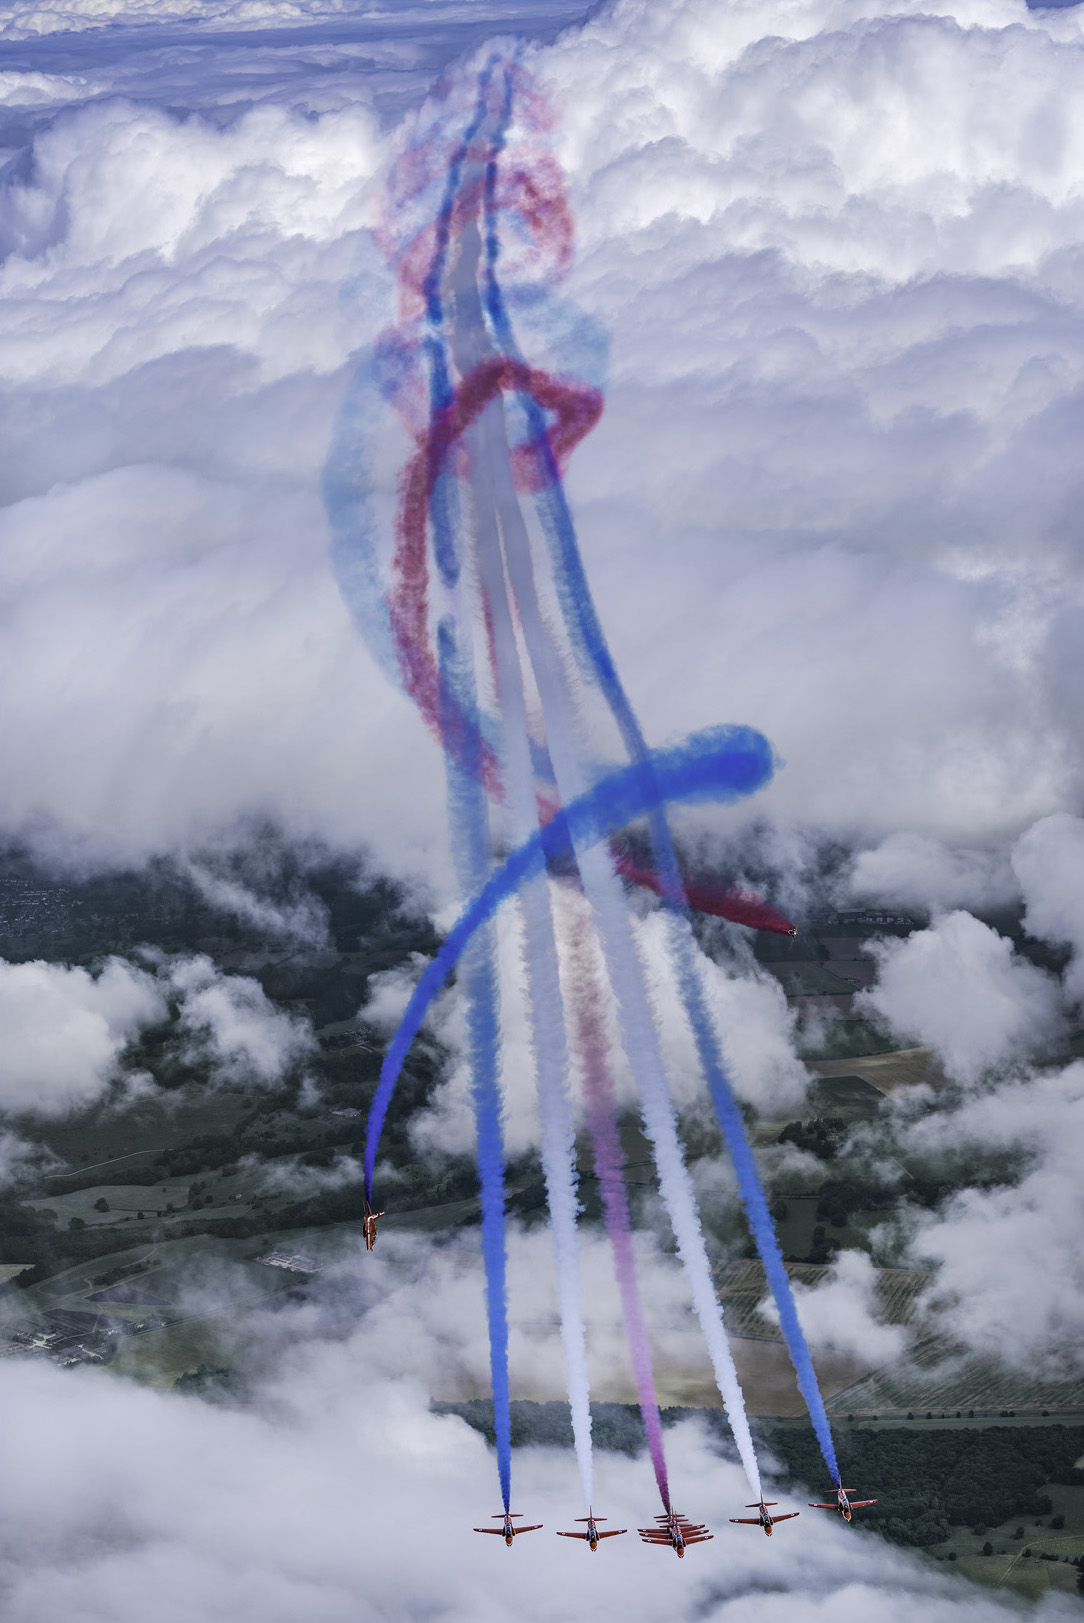 苍穹之舞-3 英国皇家空军红箭飞行表演队经典的滚转飞行表演.jpg